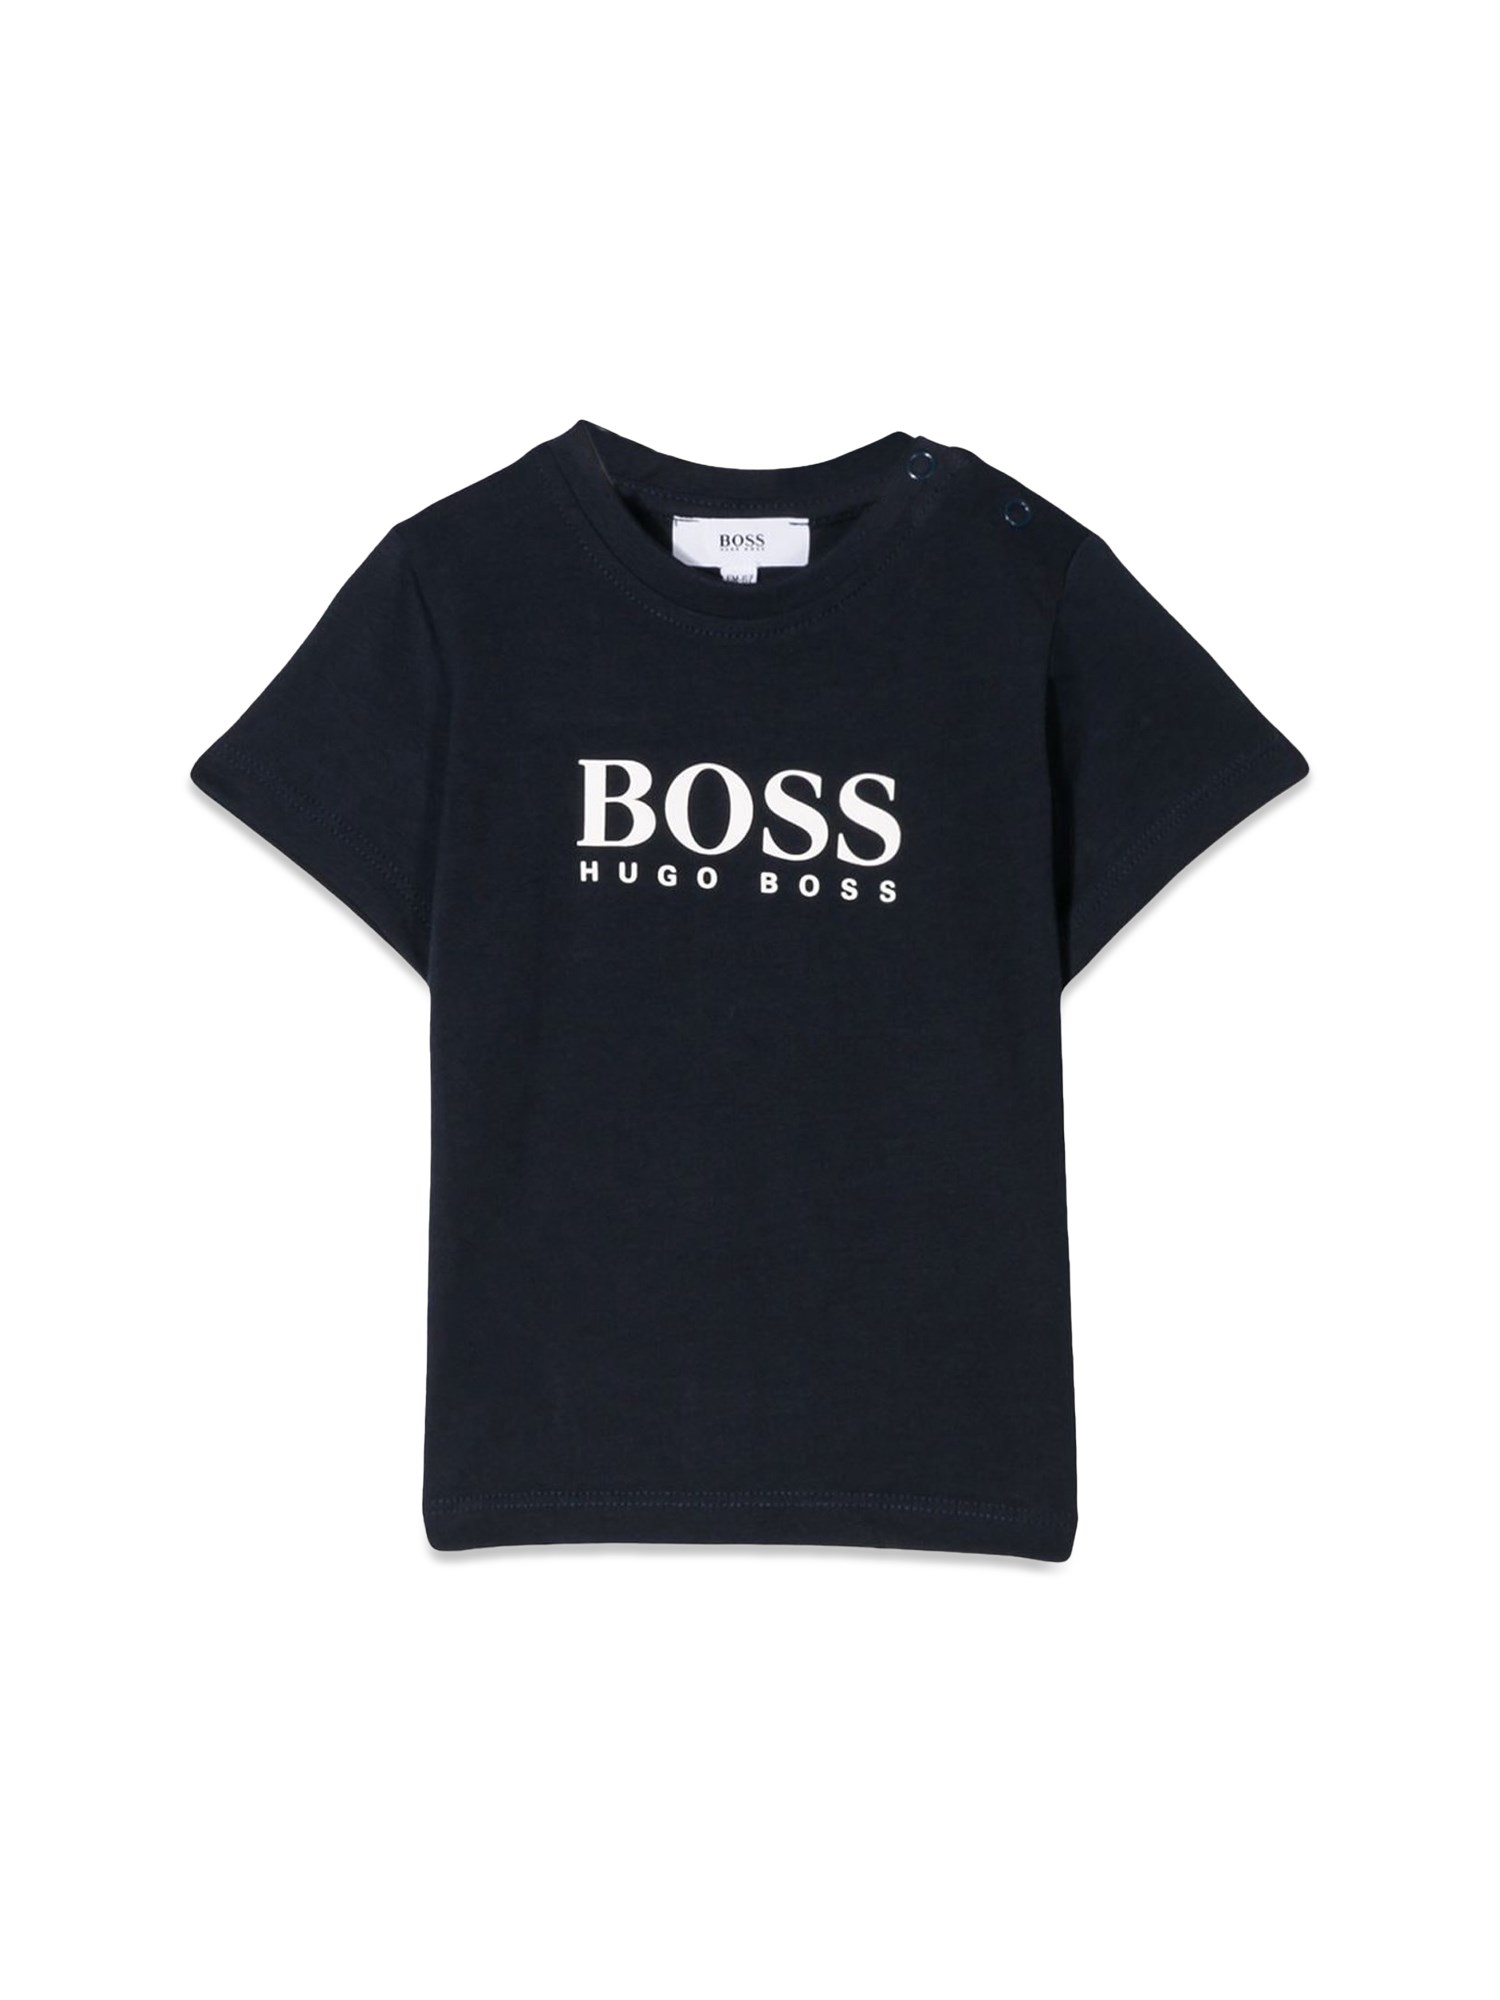 BOSS boss tee shirt